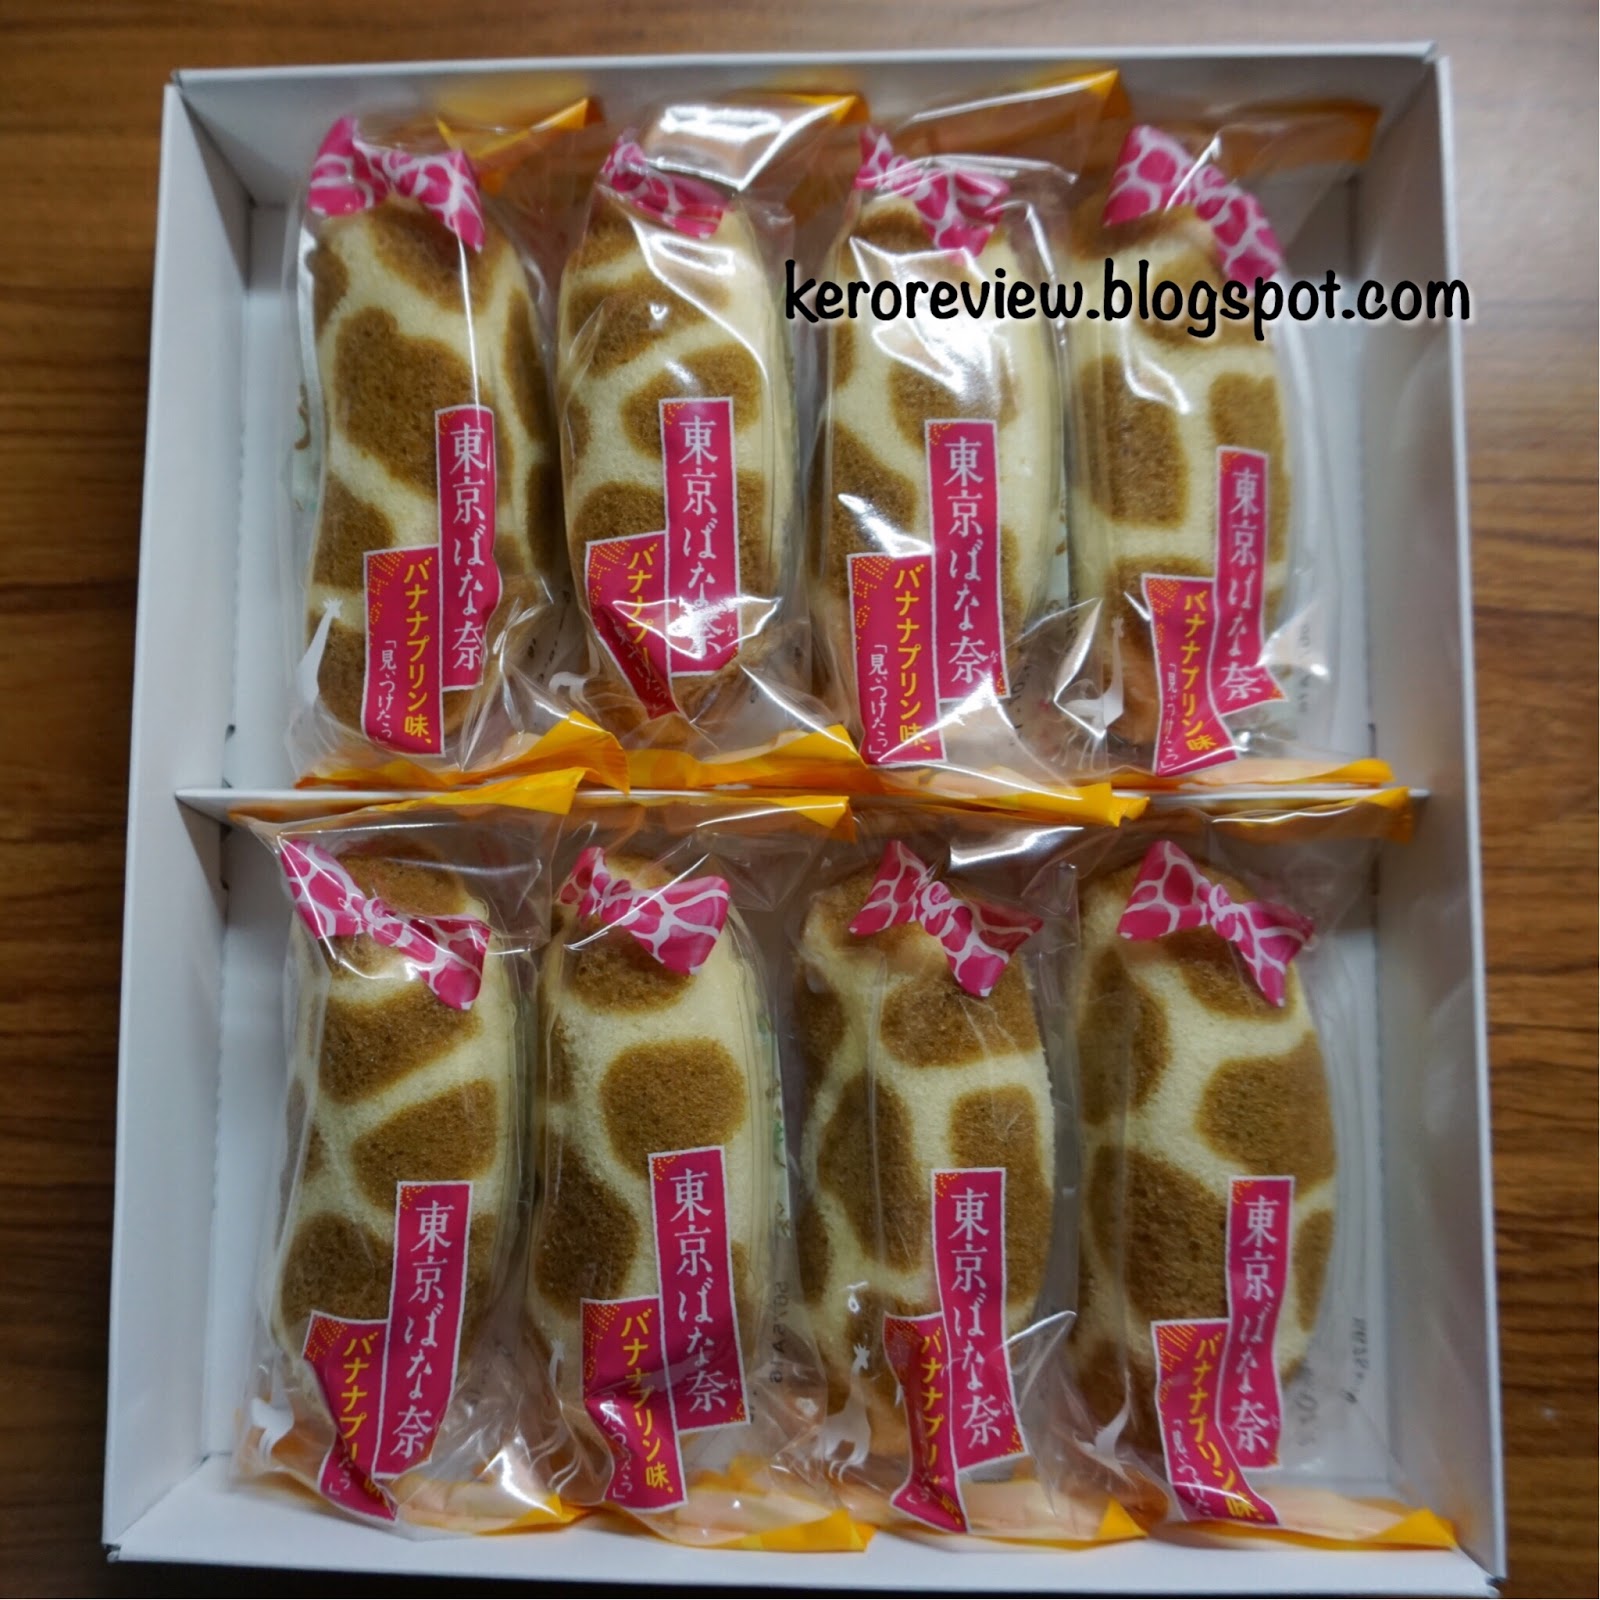 รีวิวขนมญี่ปุ่น โตเกียวบานาน่า ไส้คาราเมลคัสตาร์ดครีม ลายยีราฟ (CR) Review Tokyo Banana - Banana Caramel Custard Cream Giraffe Version from Japan..